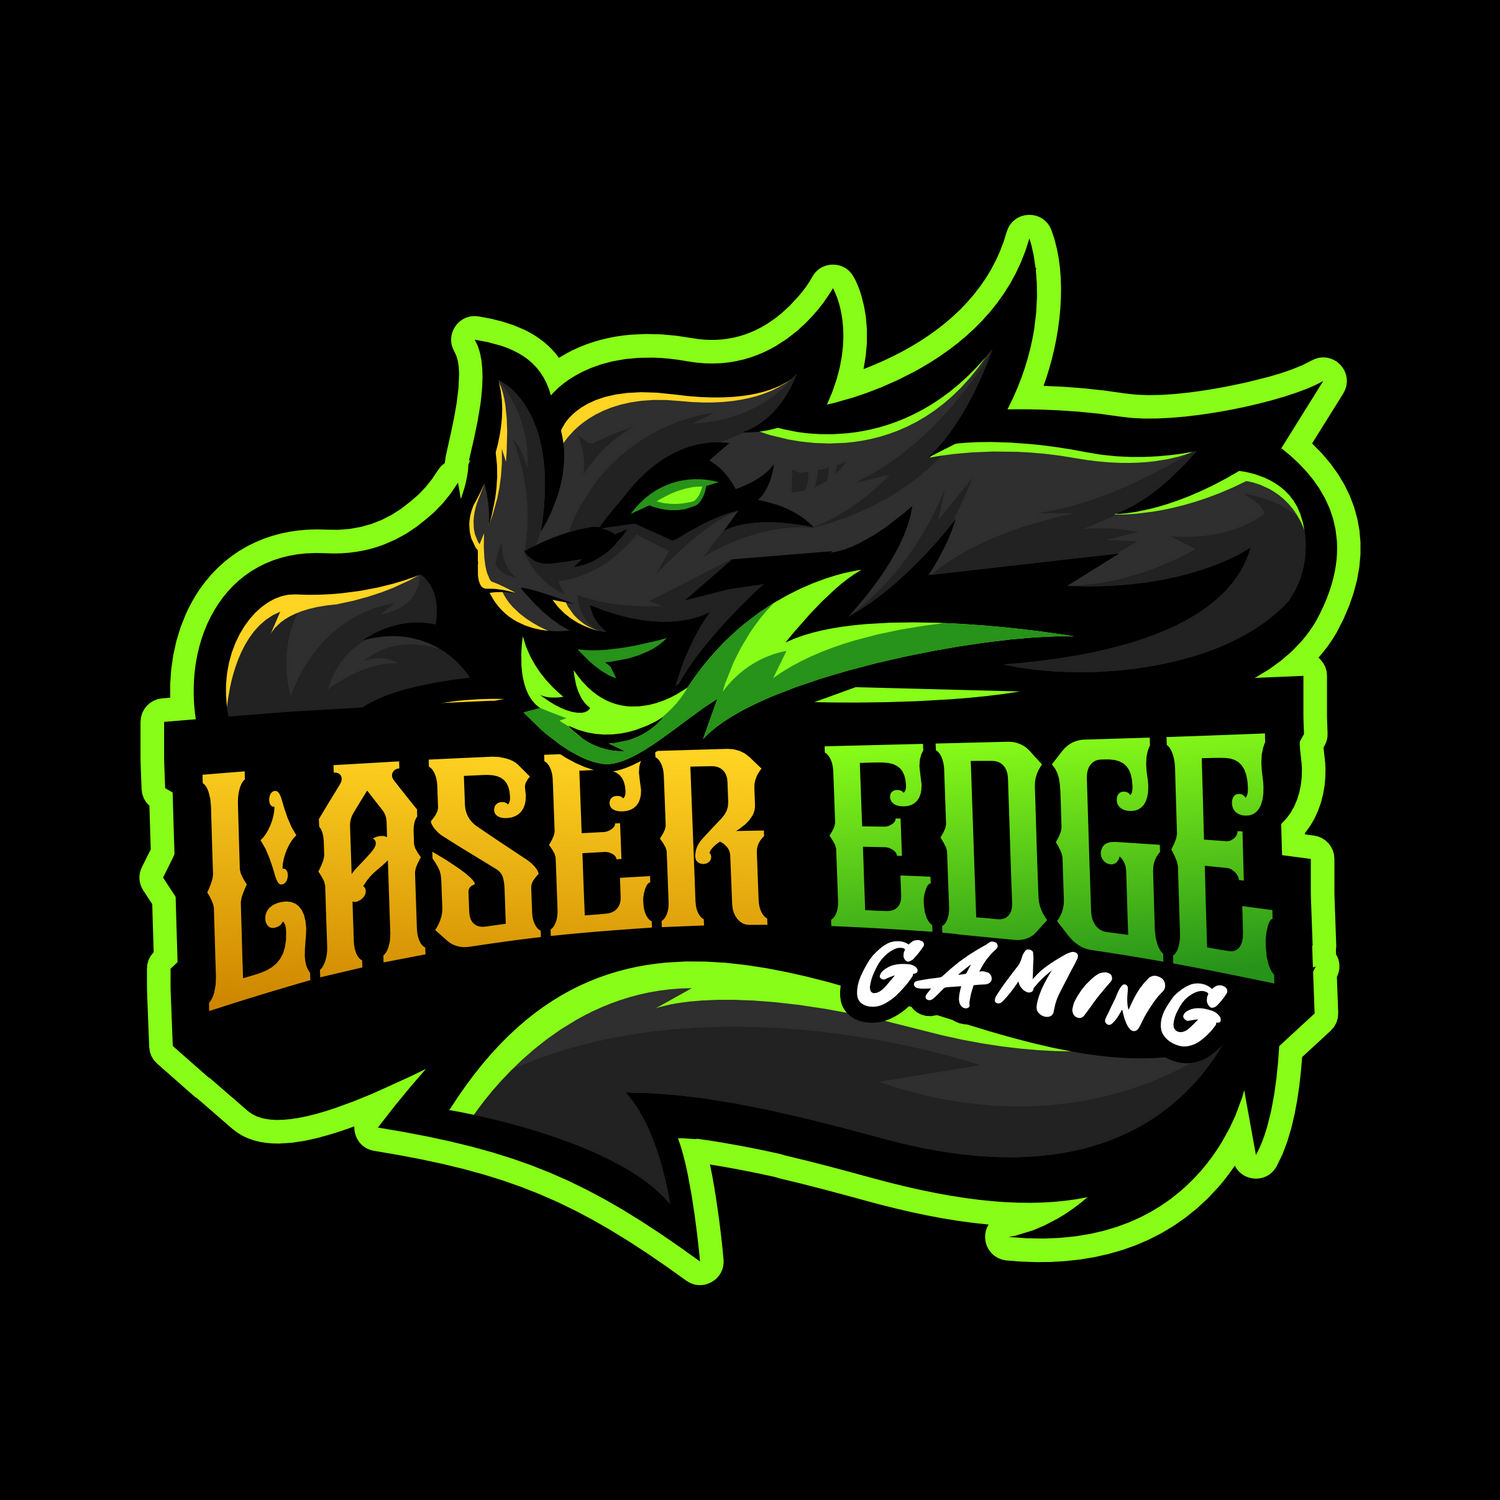 Laser Edge Gaming